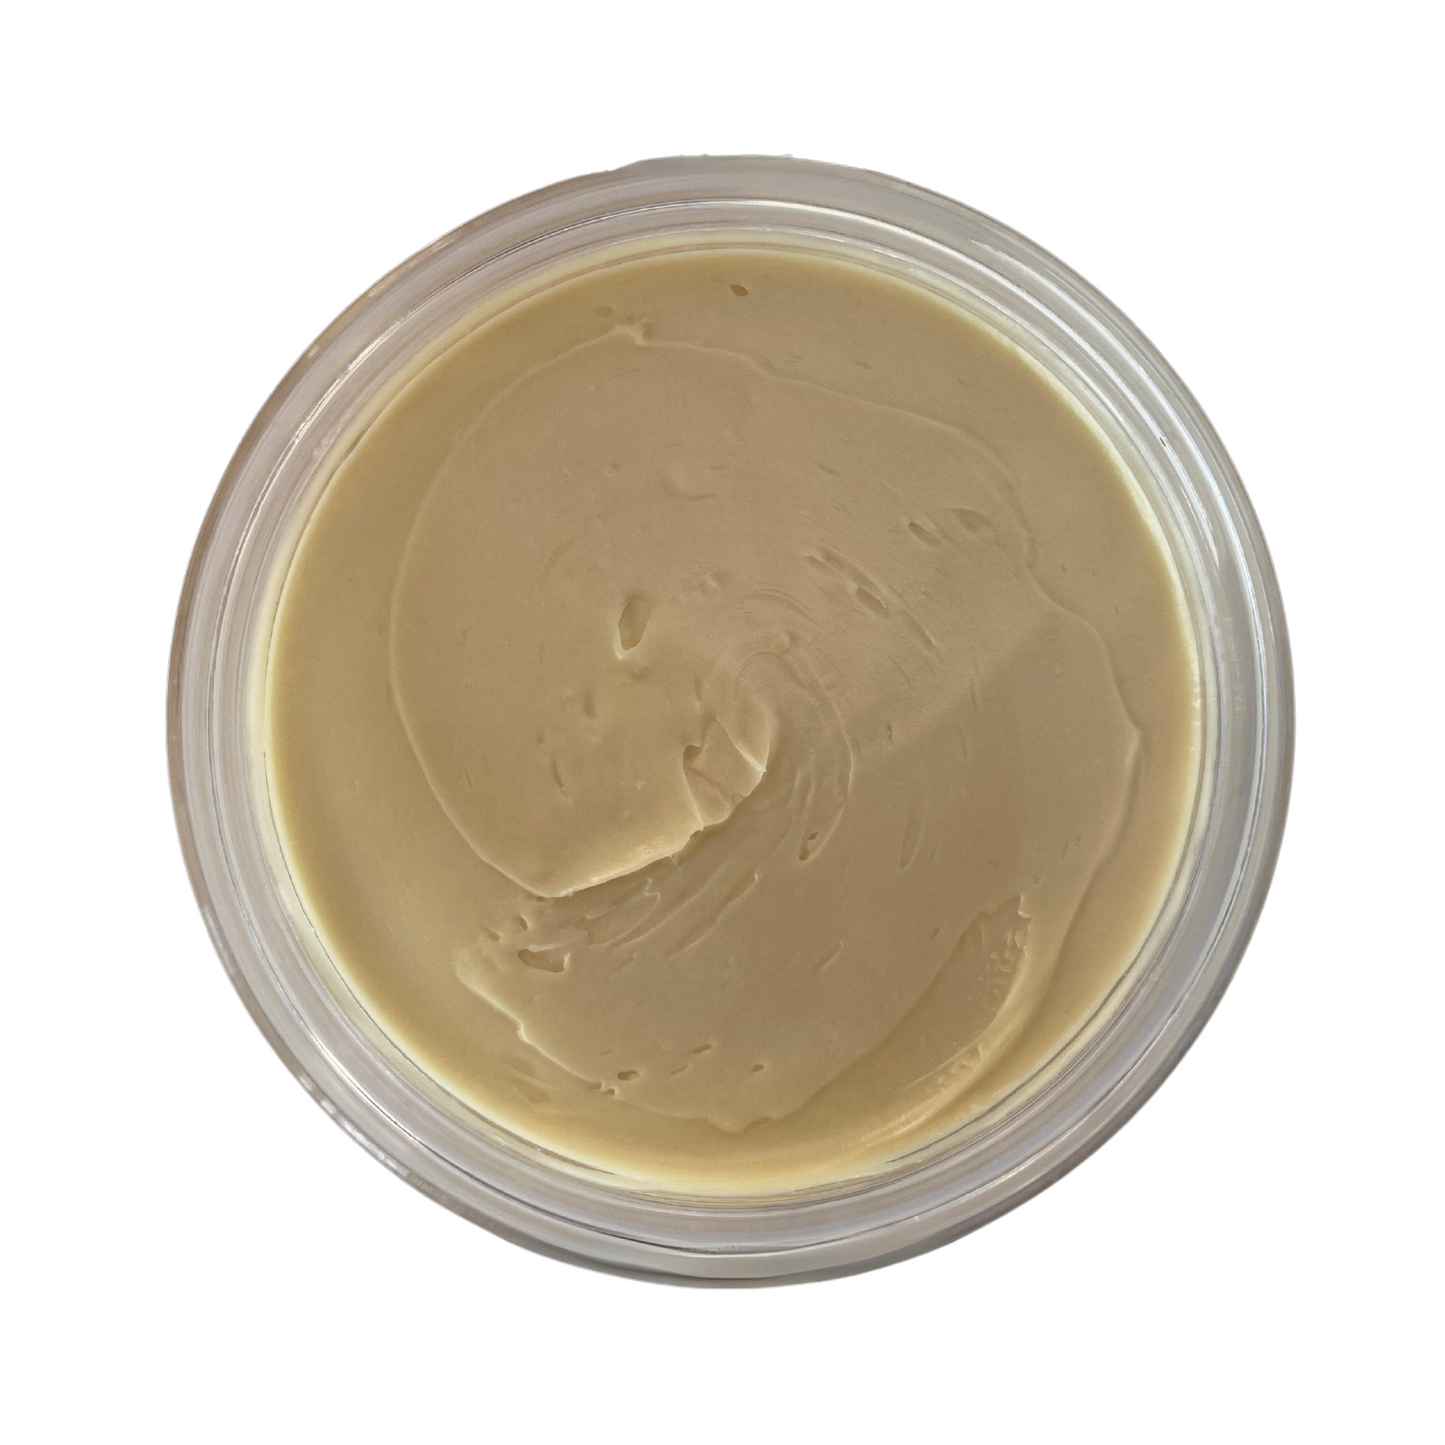 Salted Caramel - Whipped Body Butter Moisturiser